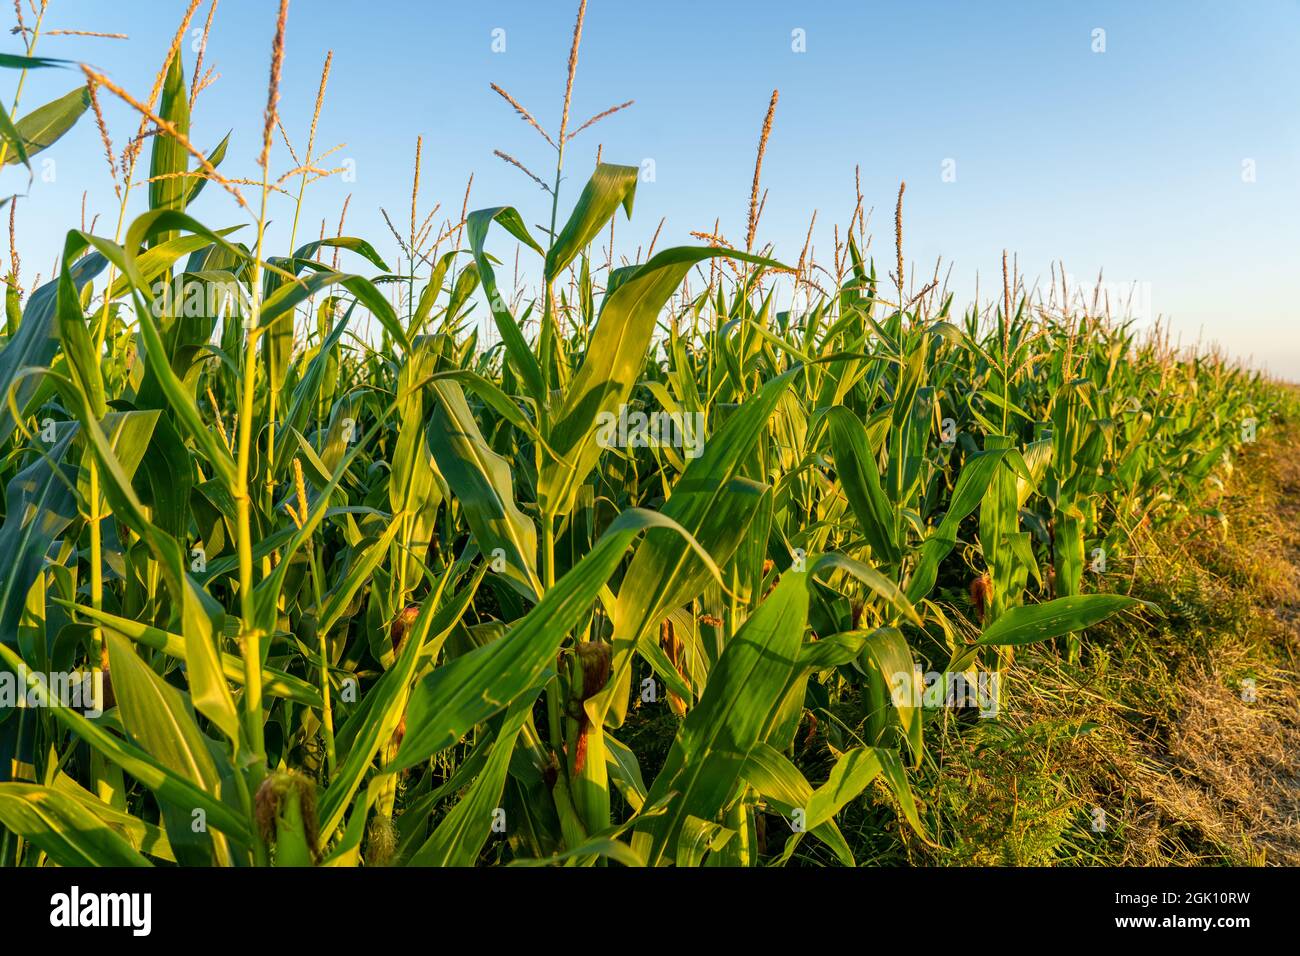 Landwirtschaft und Landwirtschaft, Ackerland in der Region Bretagne. Grünes Maisfeld in Nordfrankreich in der Bretagne. Getreide und Futterpflanzen Mais Stockfoto